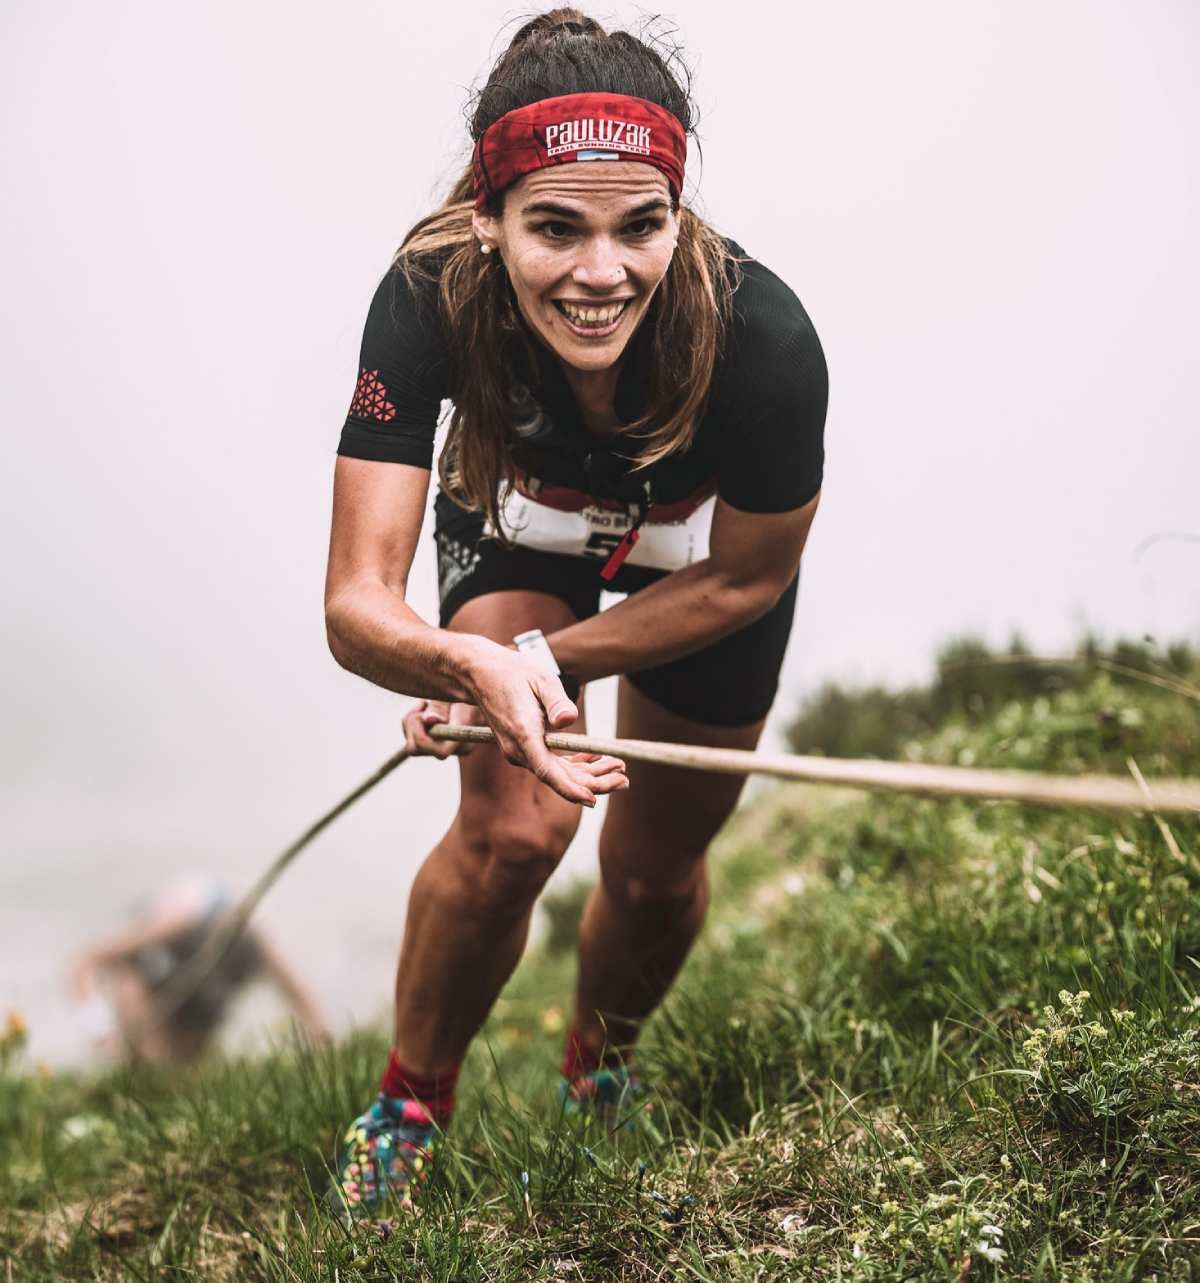 zegama-aizkorri- El secreto detrás del éxito de la emblemática carrera de trail running